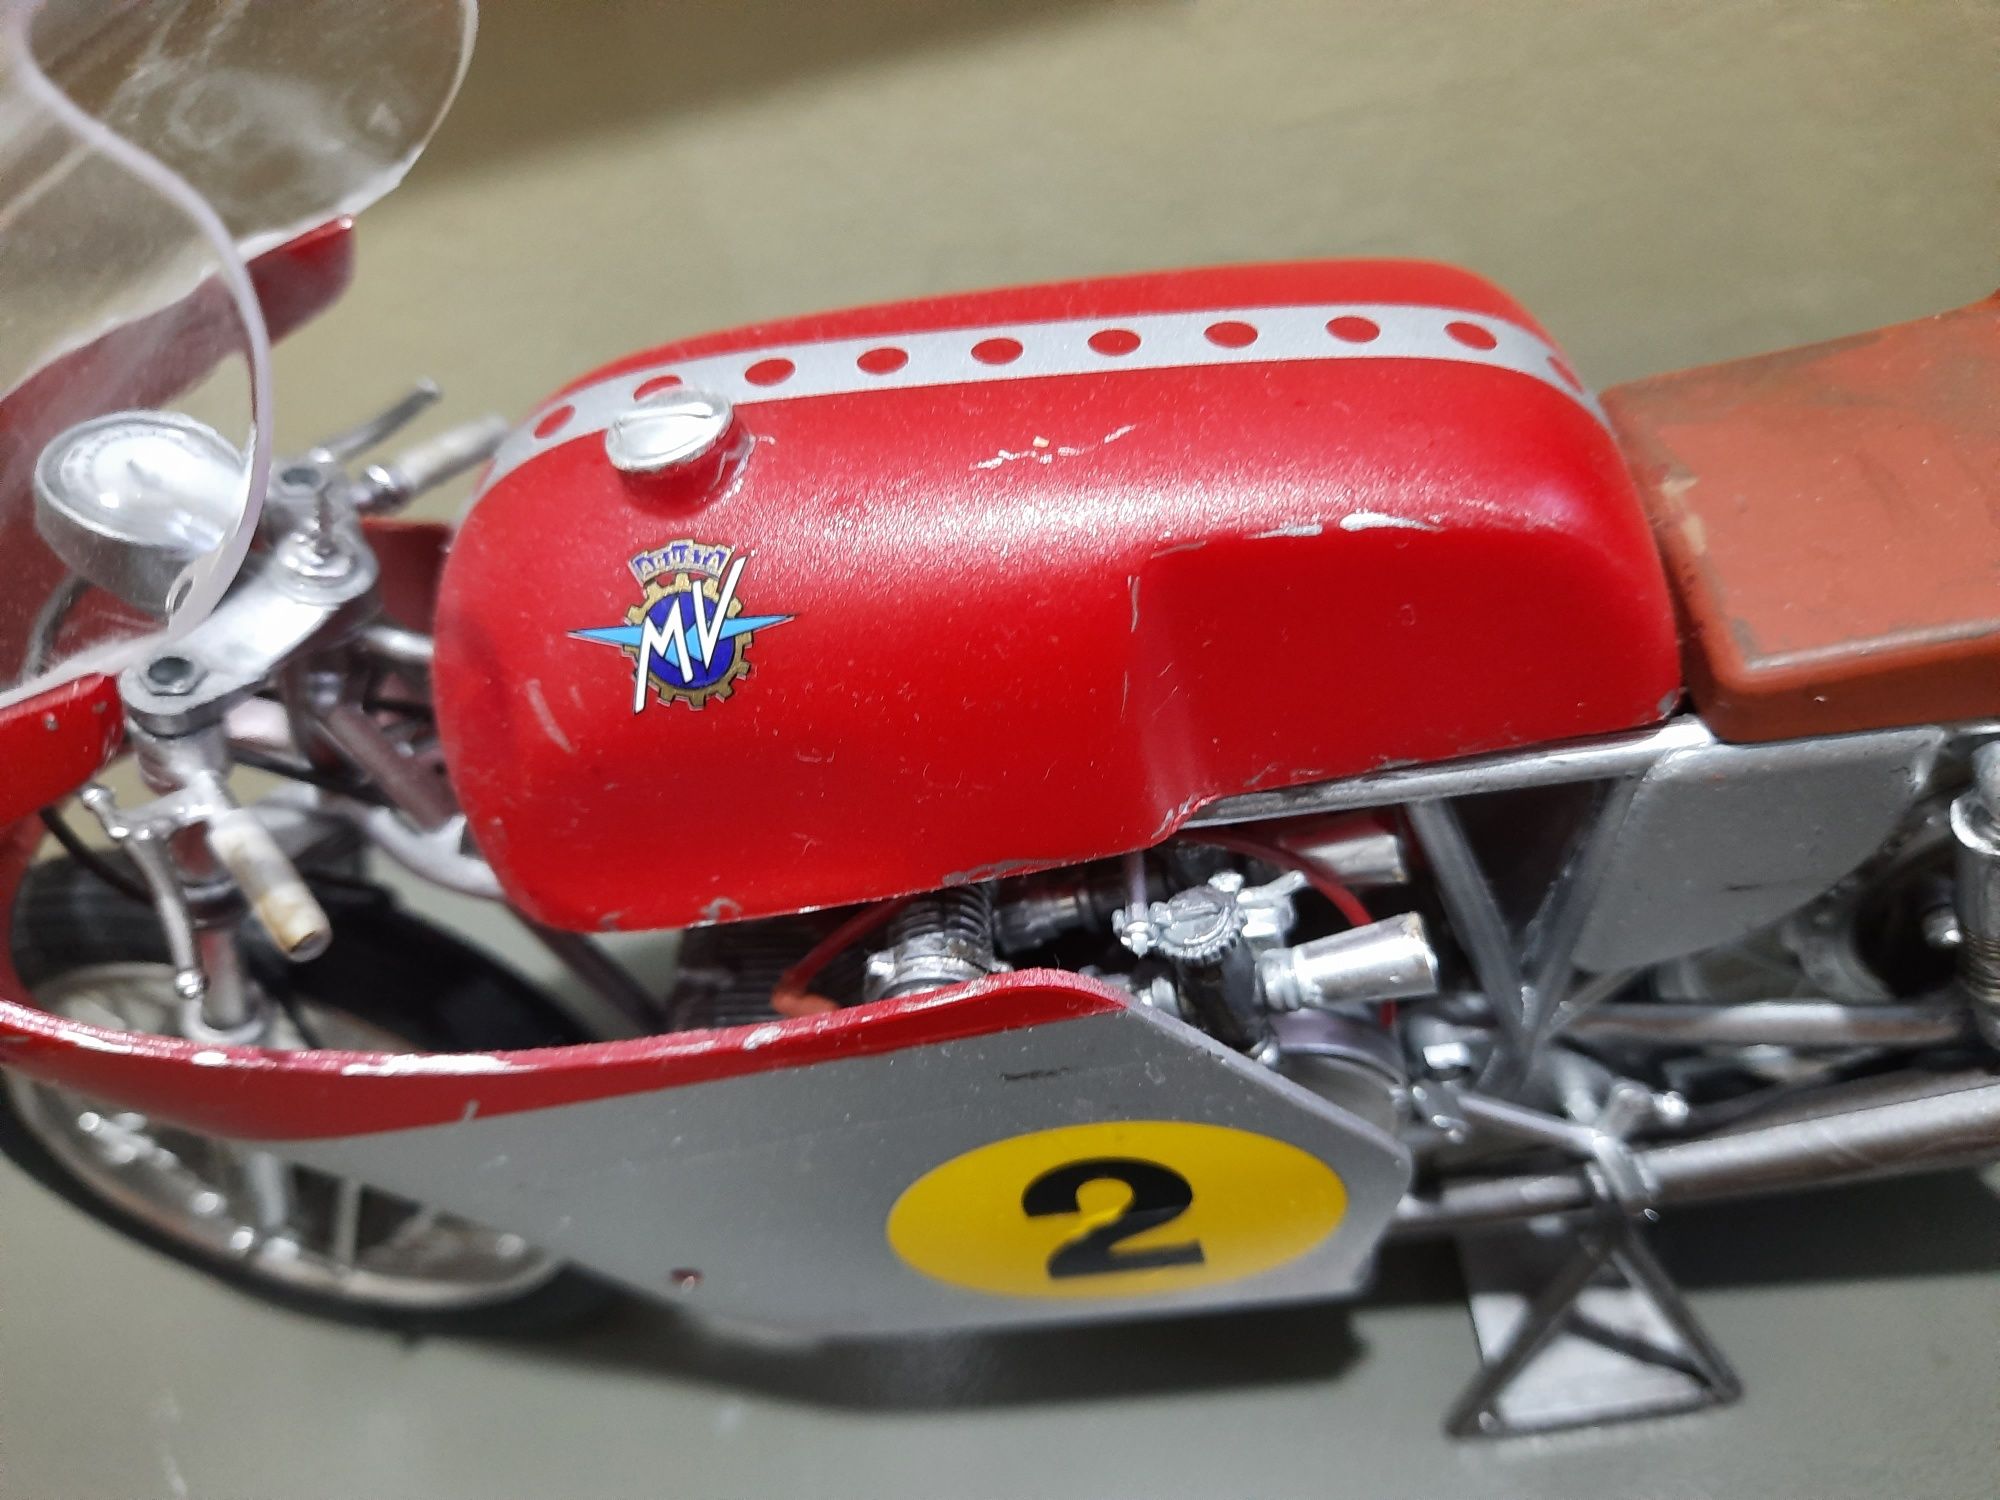 Macheta moto MV Agusta Revell